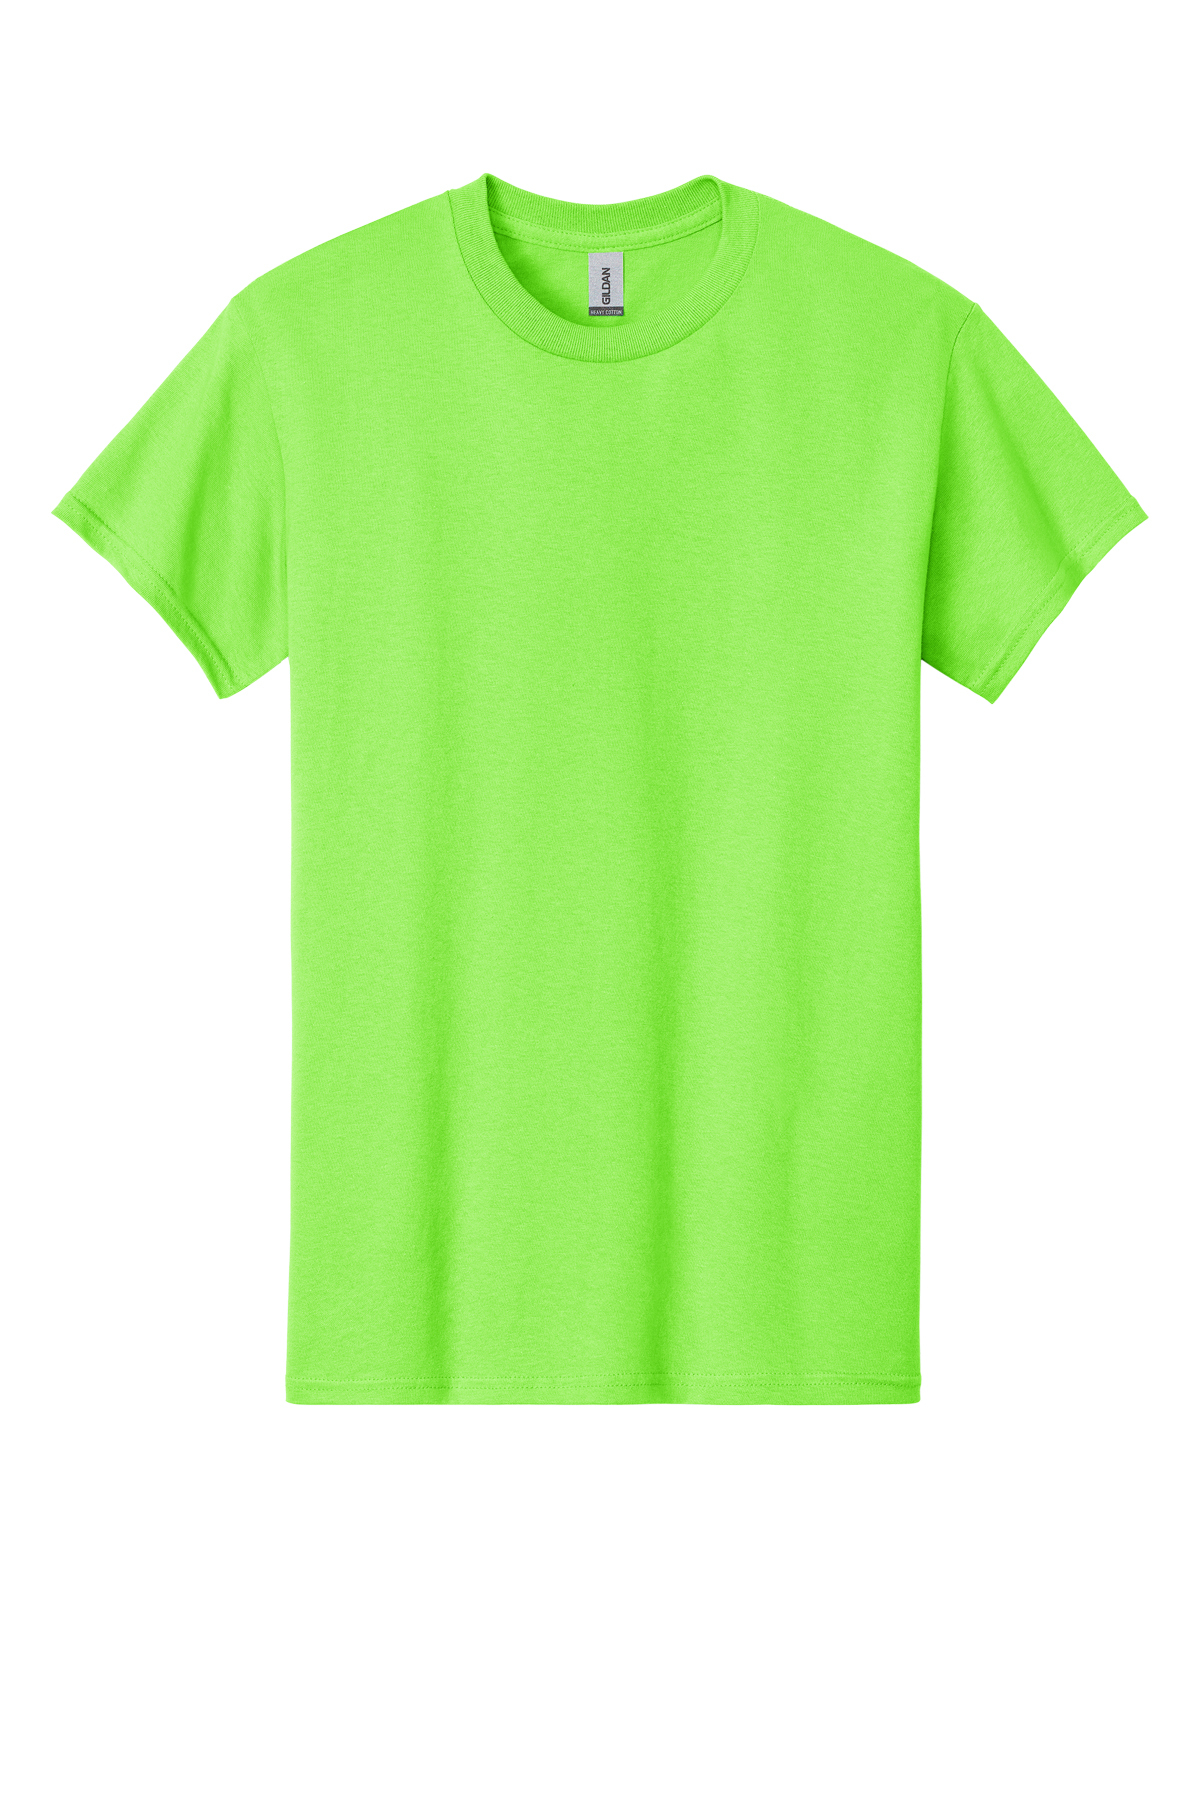 Cotton Product SanMar T-Shirt | Heavy - Cotton 100% | Gildan